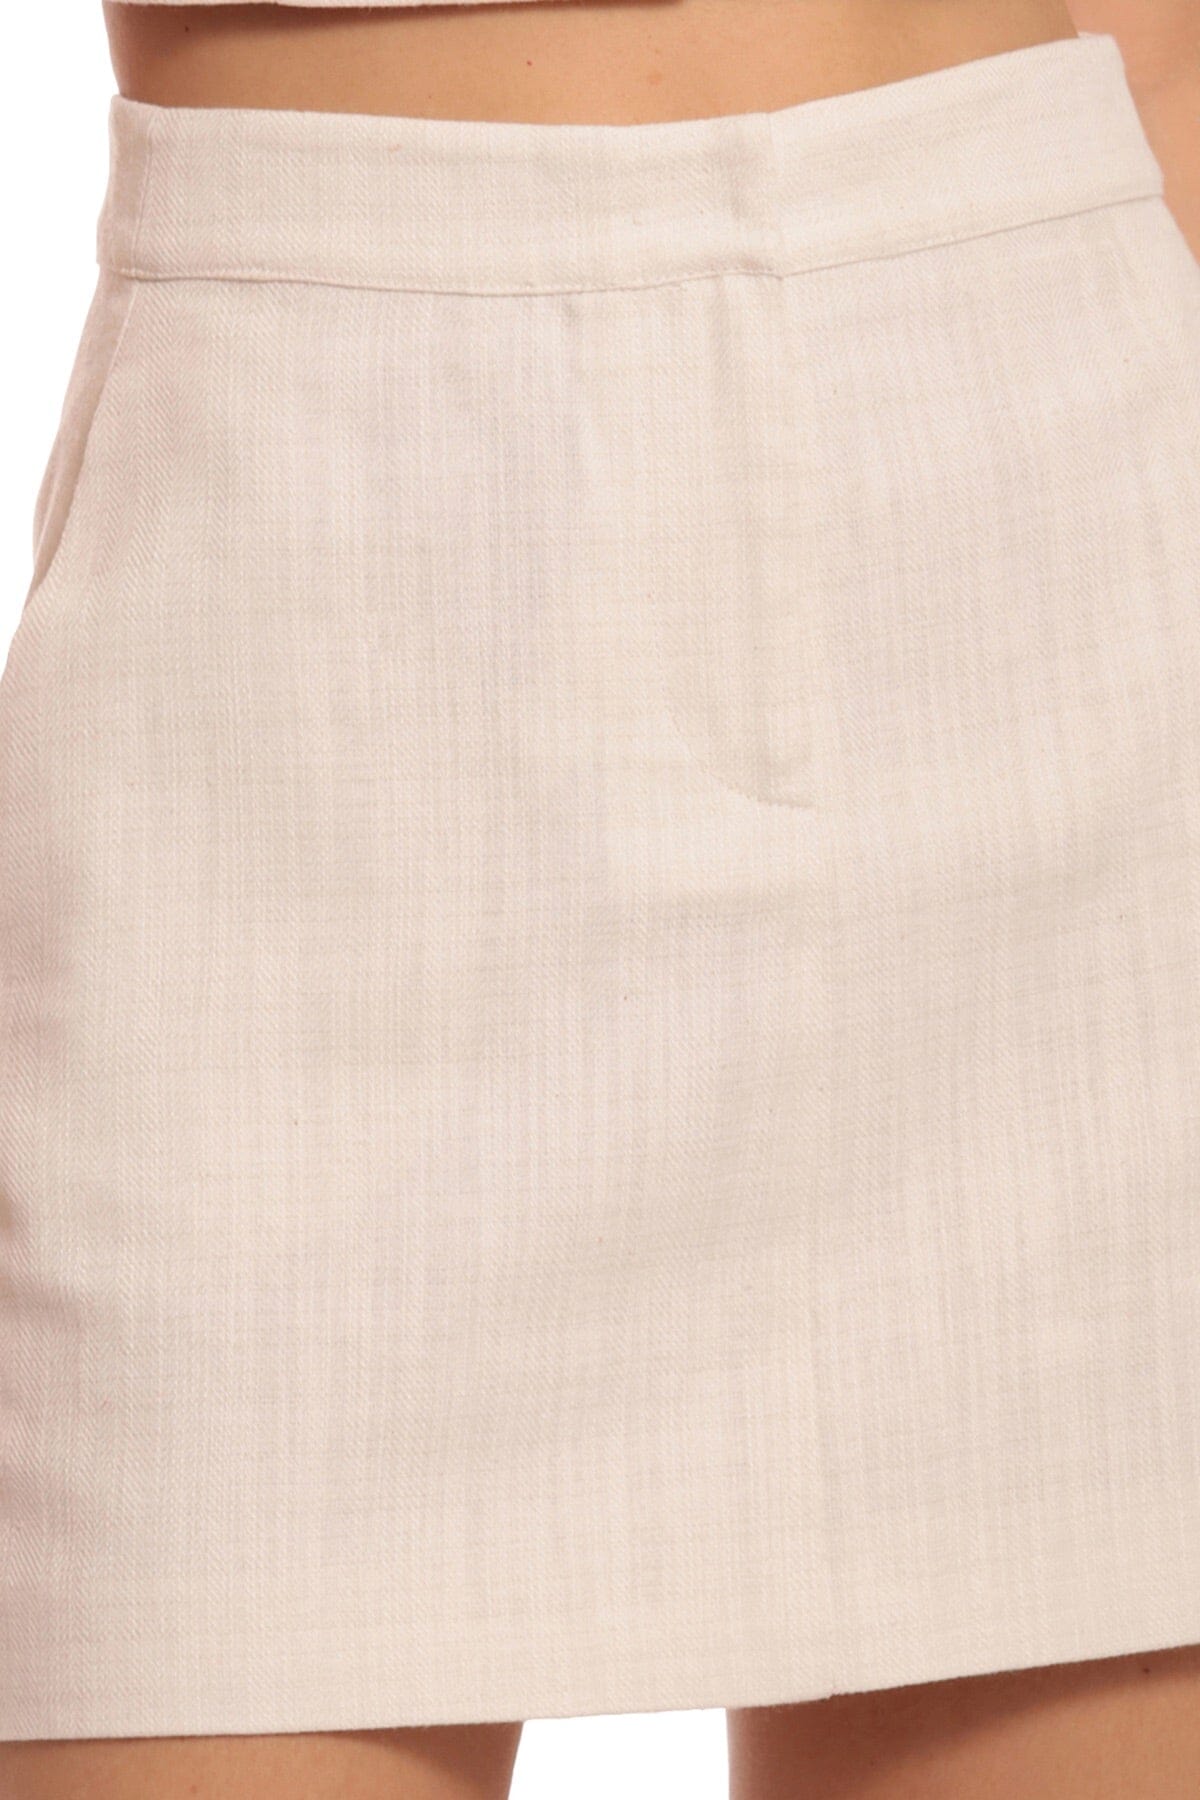 Textured Cotton Linen Mini Skirt Women's Flattering Bottoms Avec Les Filles zip front closure white